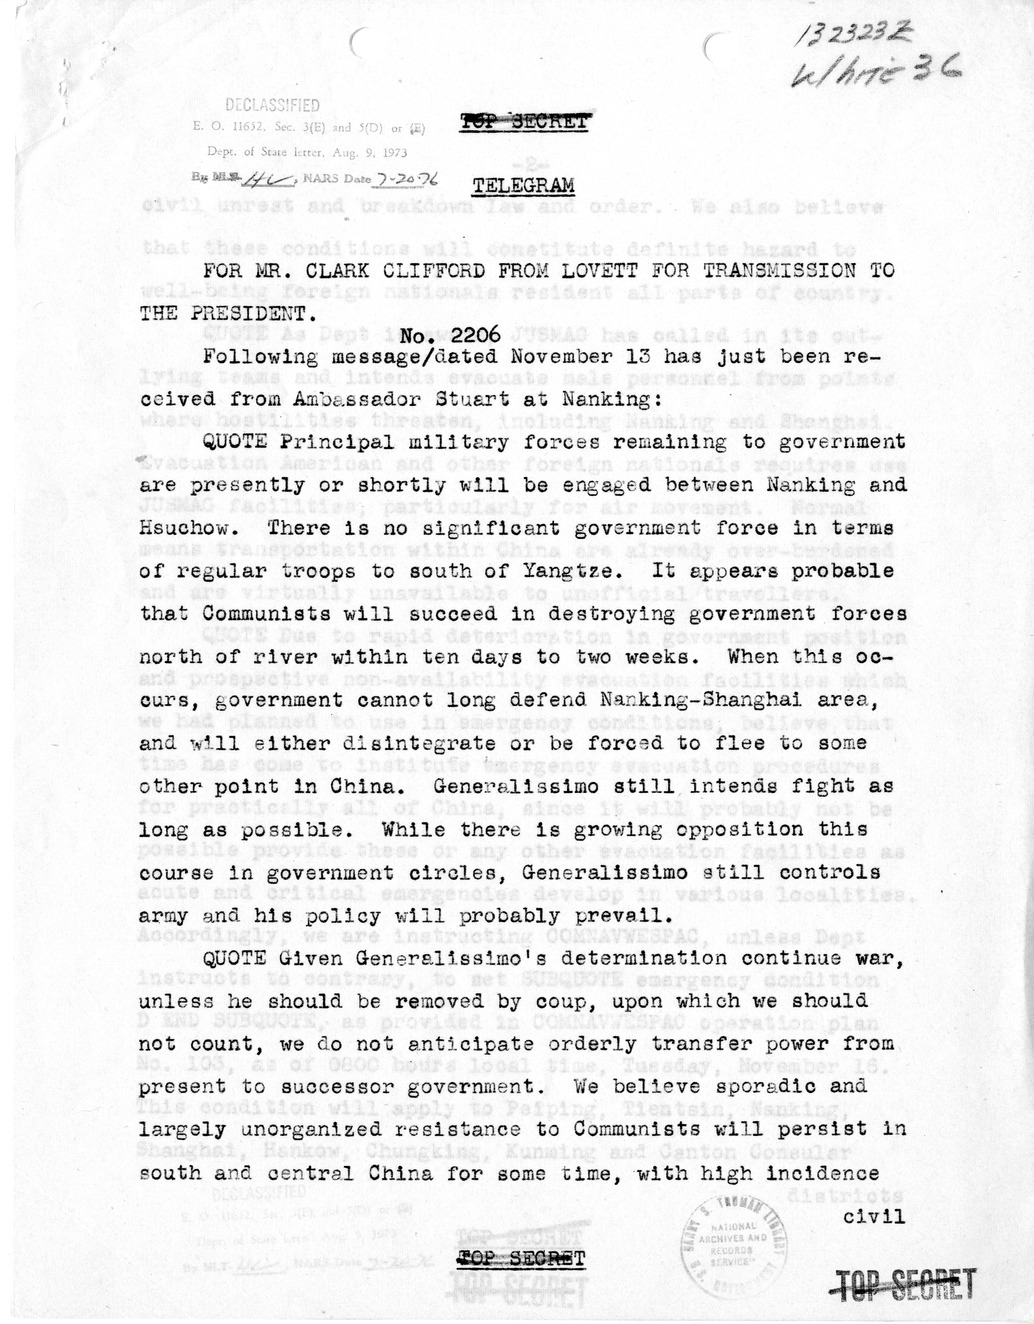 Telegram from Robert Lovett to Clark Clifford for Transmission to the President